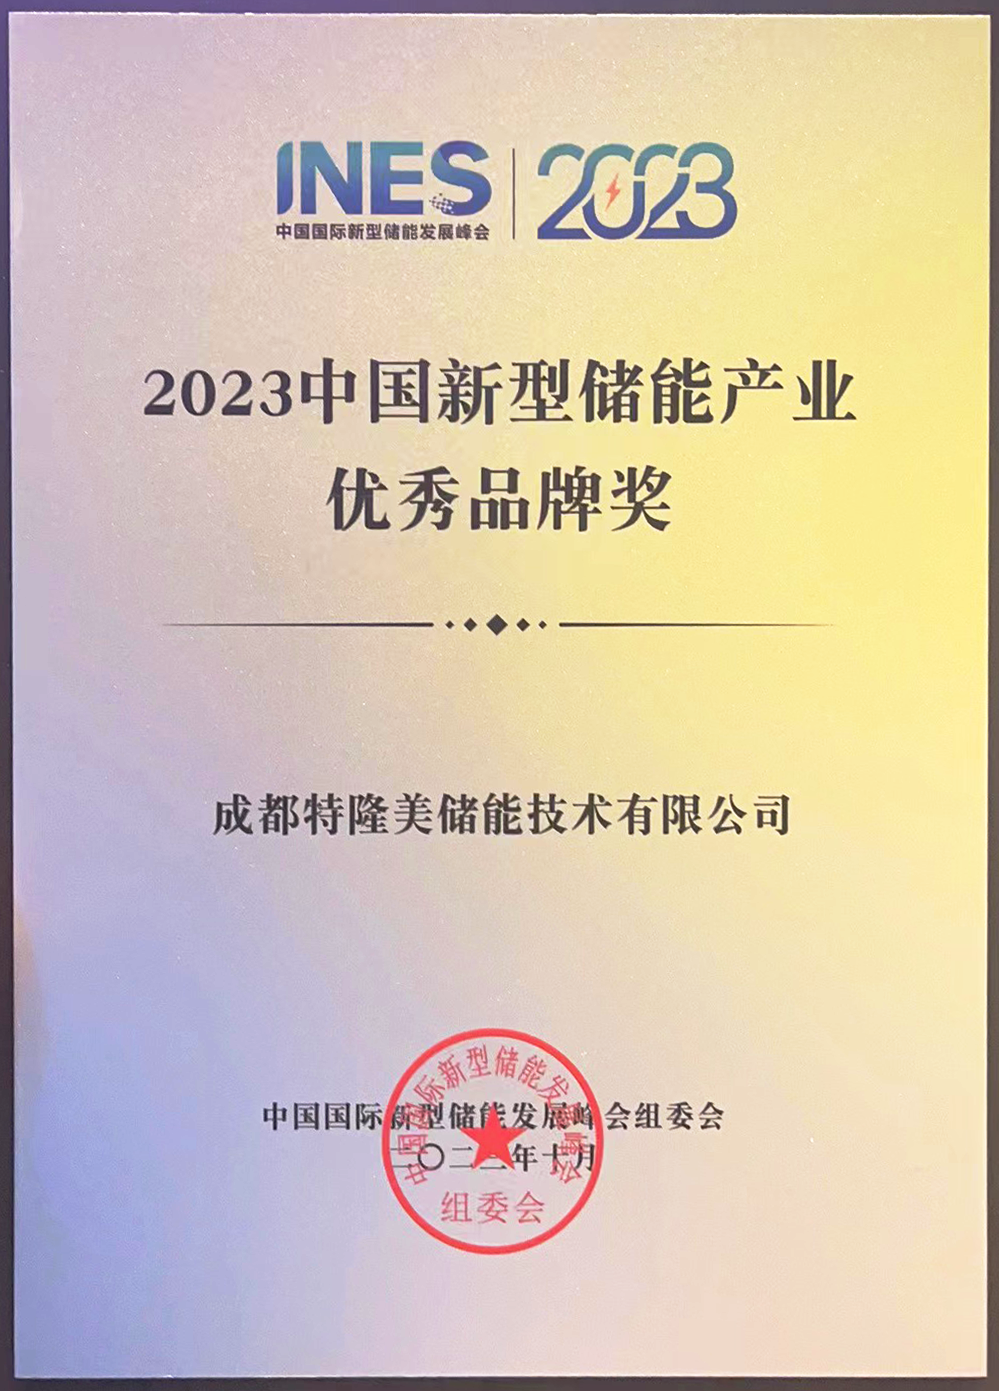 特隆美亮相2023中国国际新型储能发展峰会，荣获“优秀品牌奖”